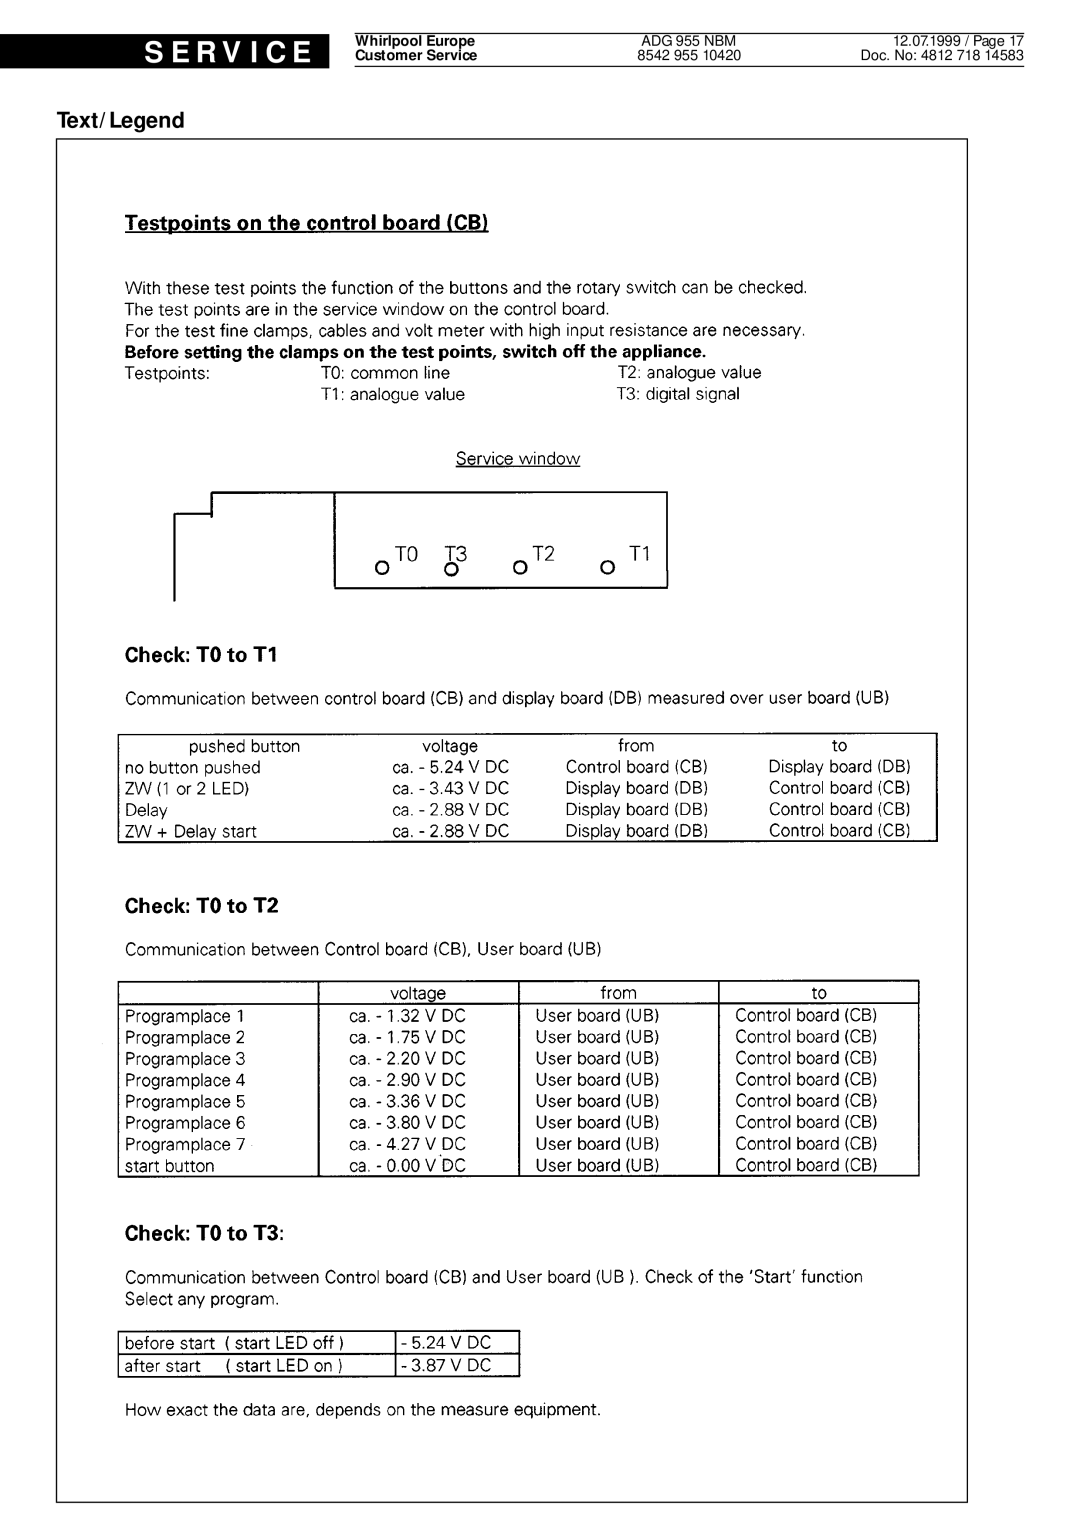 Whirlpool ADG 955 NBM service manual S E R V I C E, Text/Legend, 12.07.1999 / Page, Doc. No 4812 